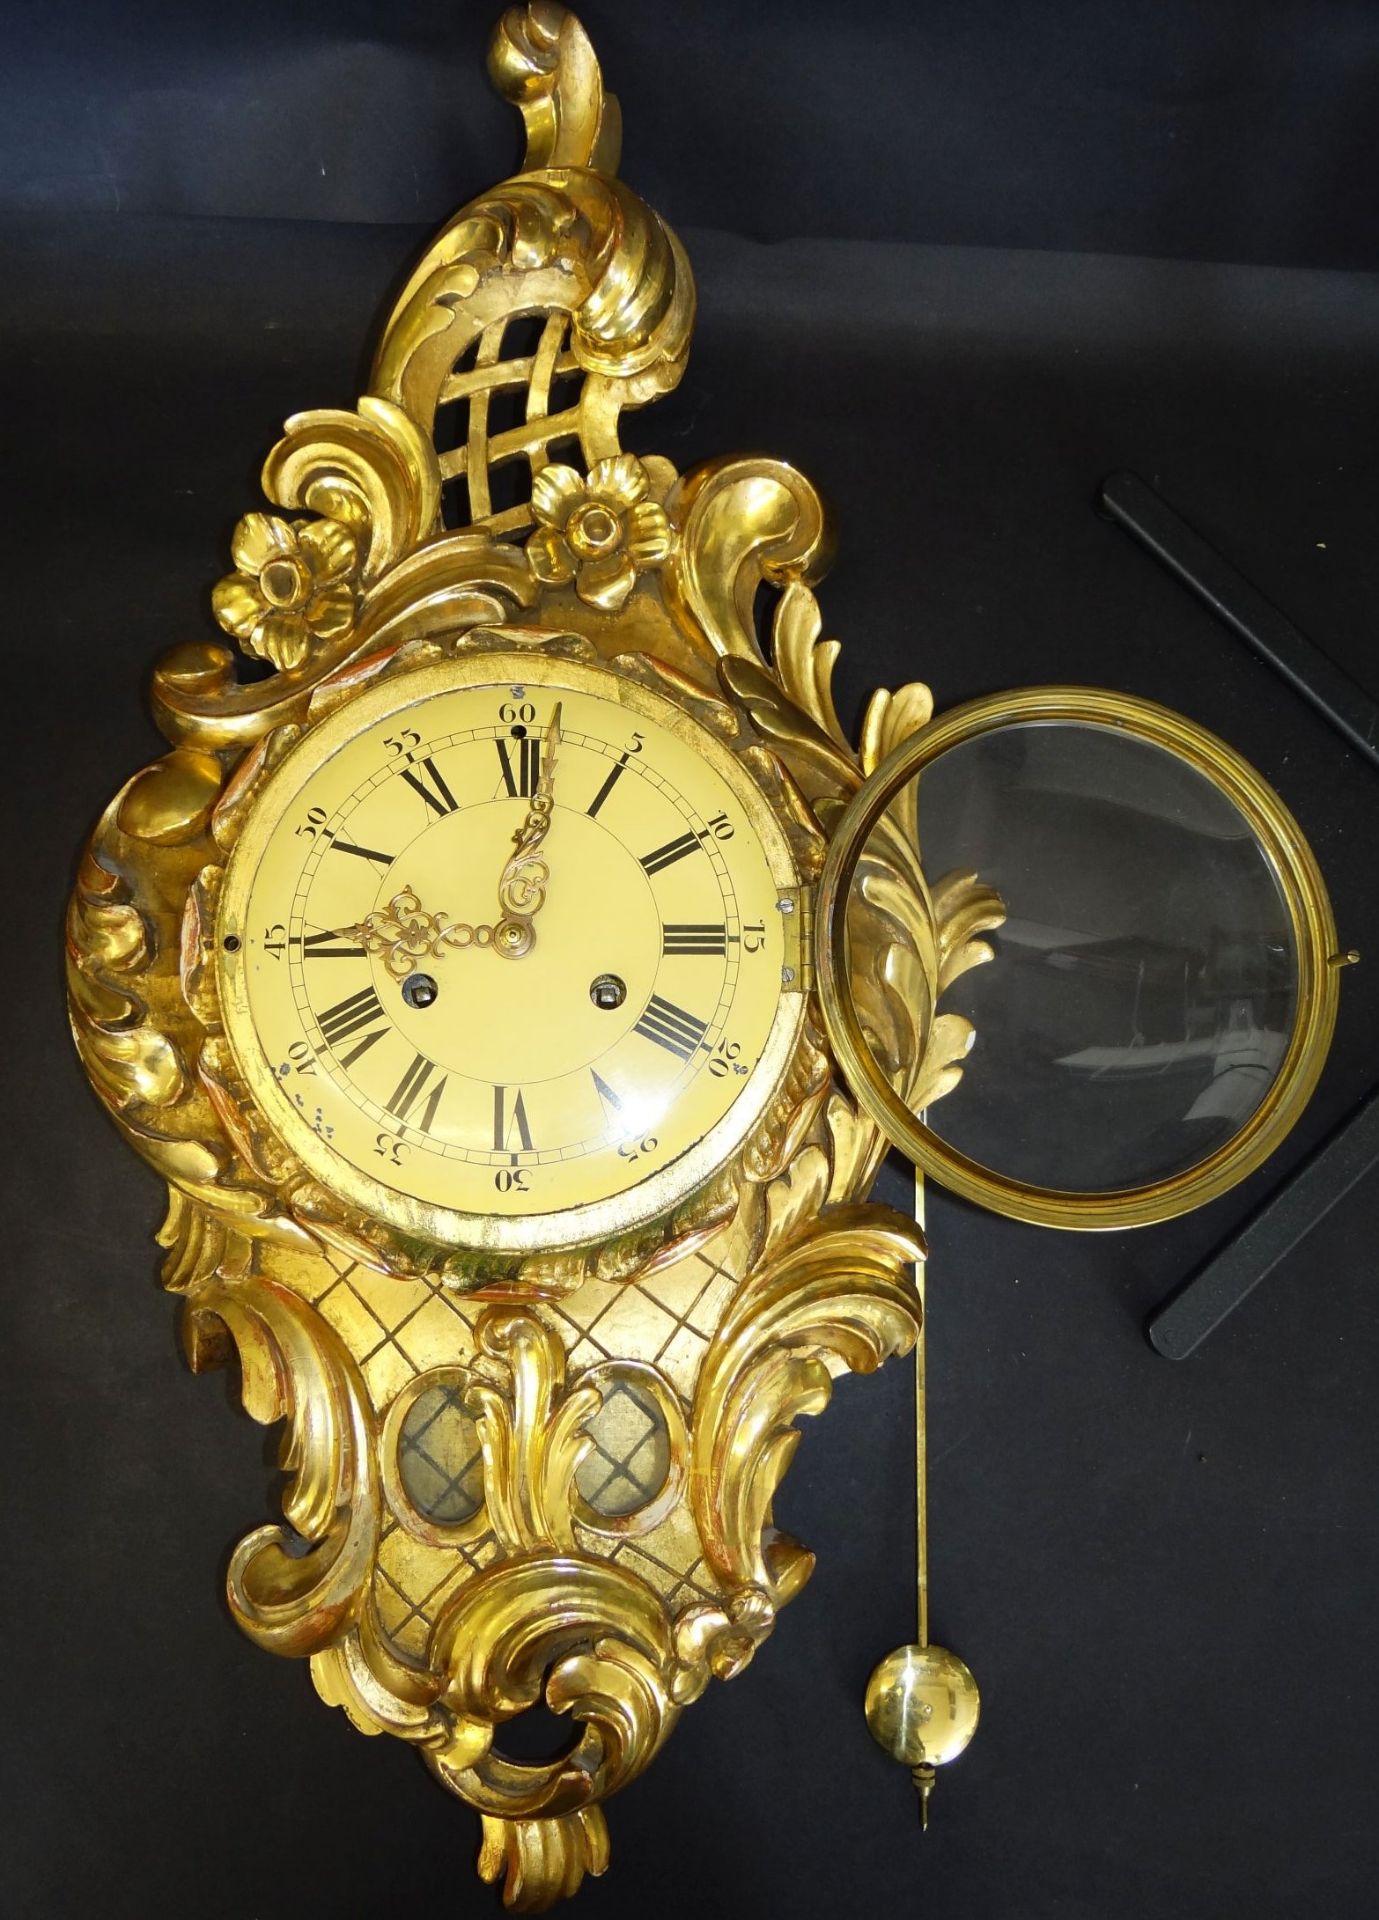 gr. Kartell-Uhr, Holz vergoldet, , H-62 cm, B-32 cm, guter Zustand, leider falsches , zu langes - Bild 3 aus 10